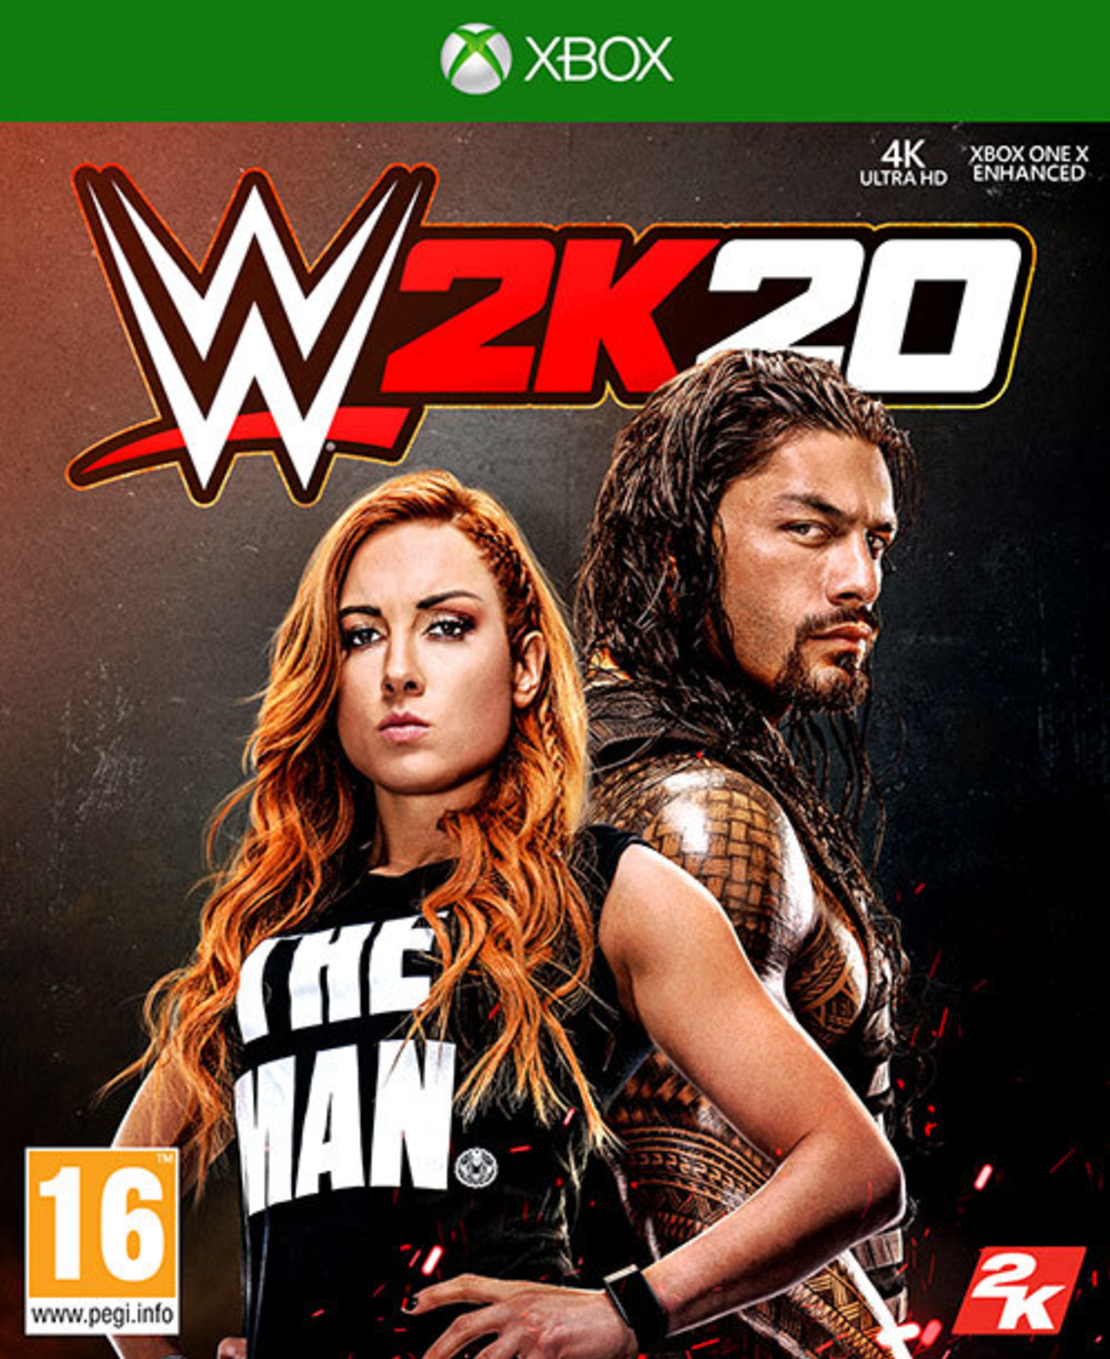 משחק WWE 2K20 ל- XBOX ONE